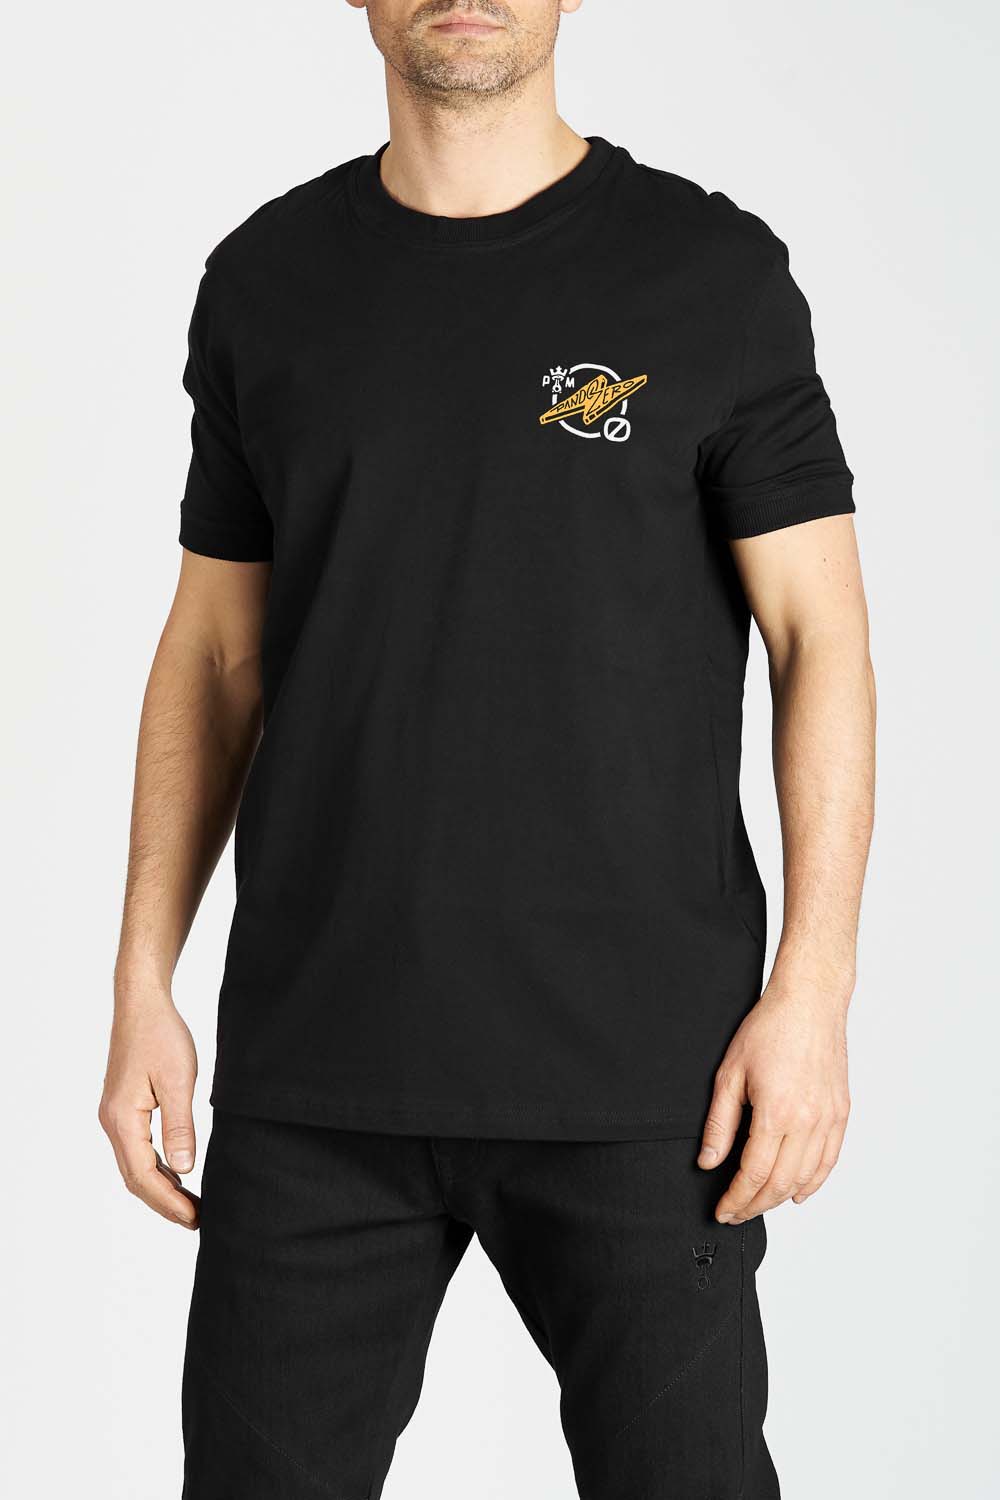 MIKE ZERO 1 - T-Shirt für Biker Regular Fit Limited Edition 4